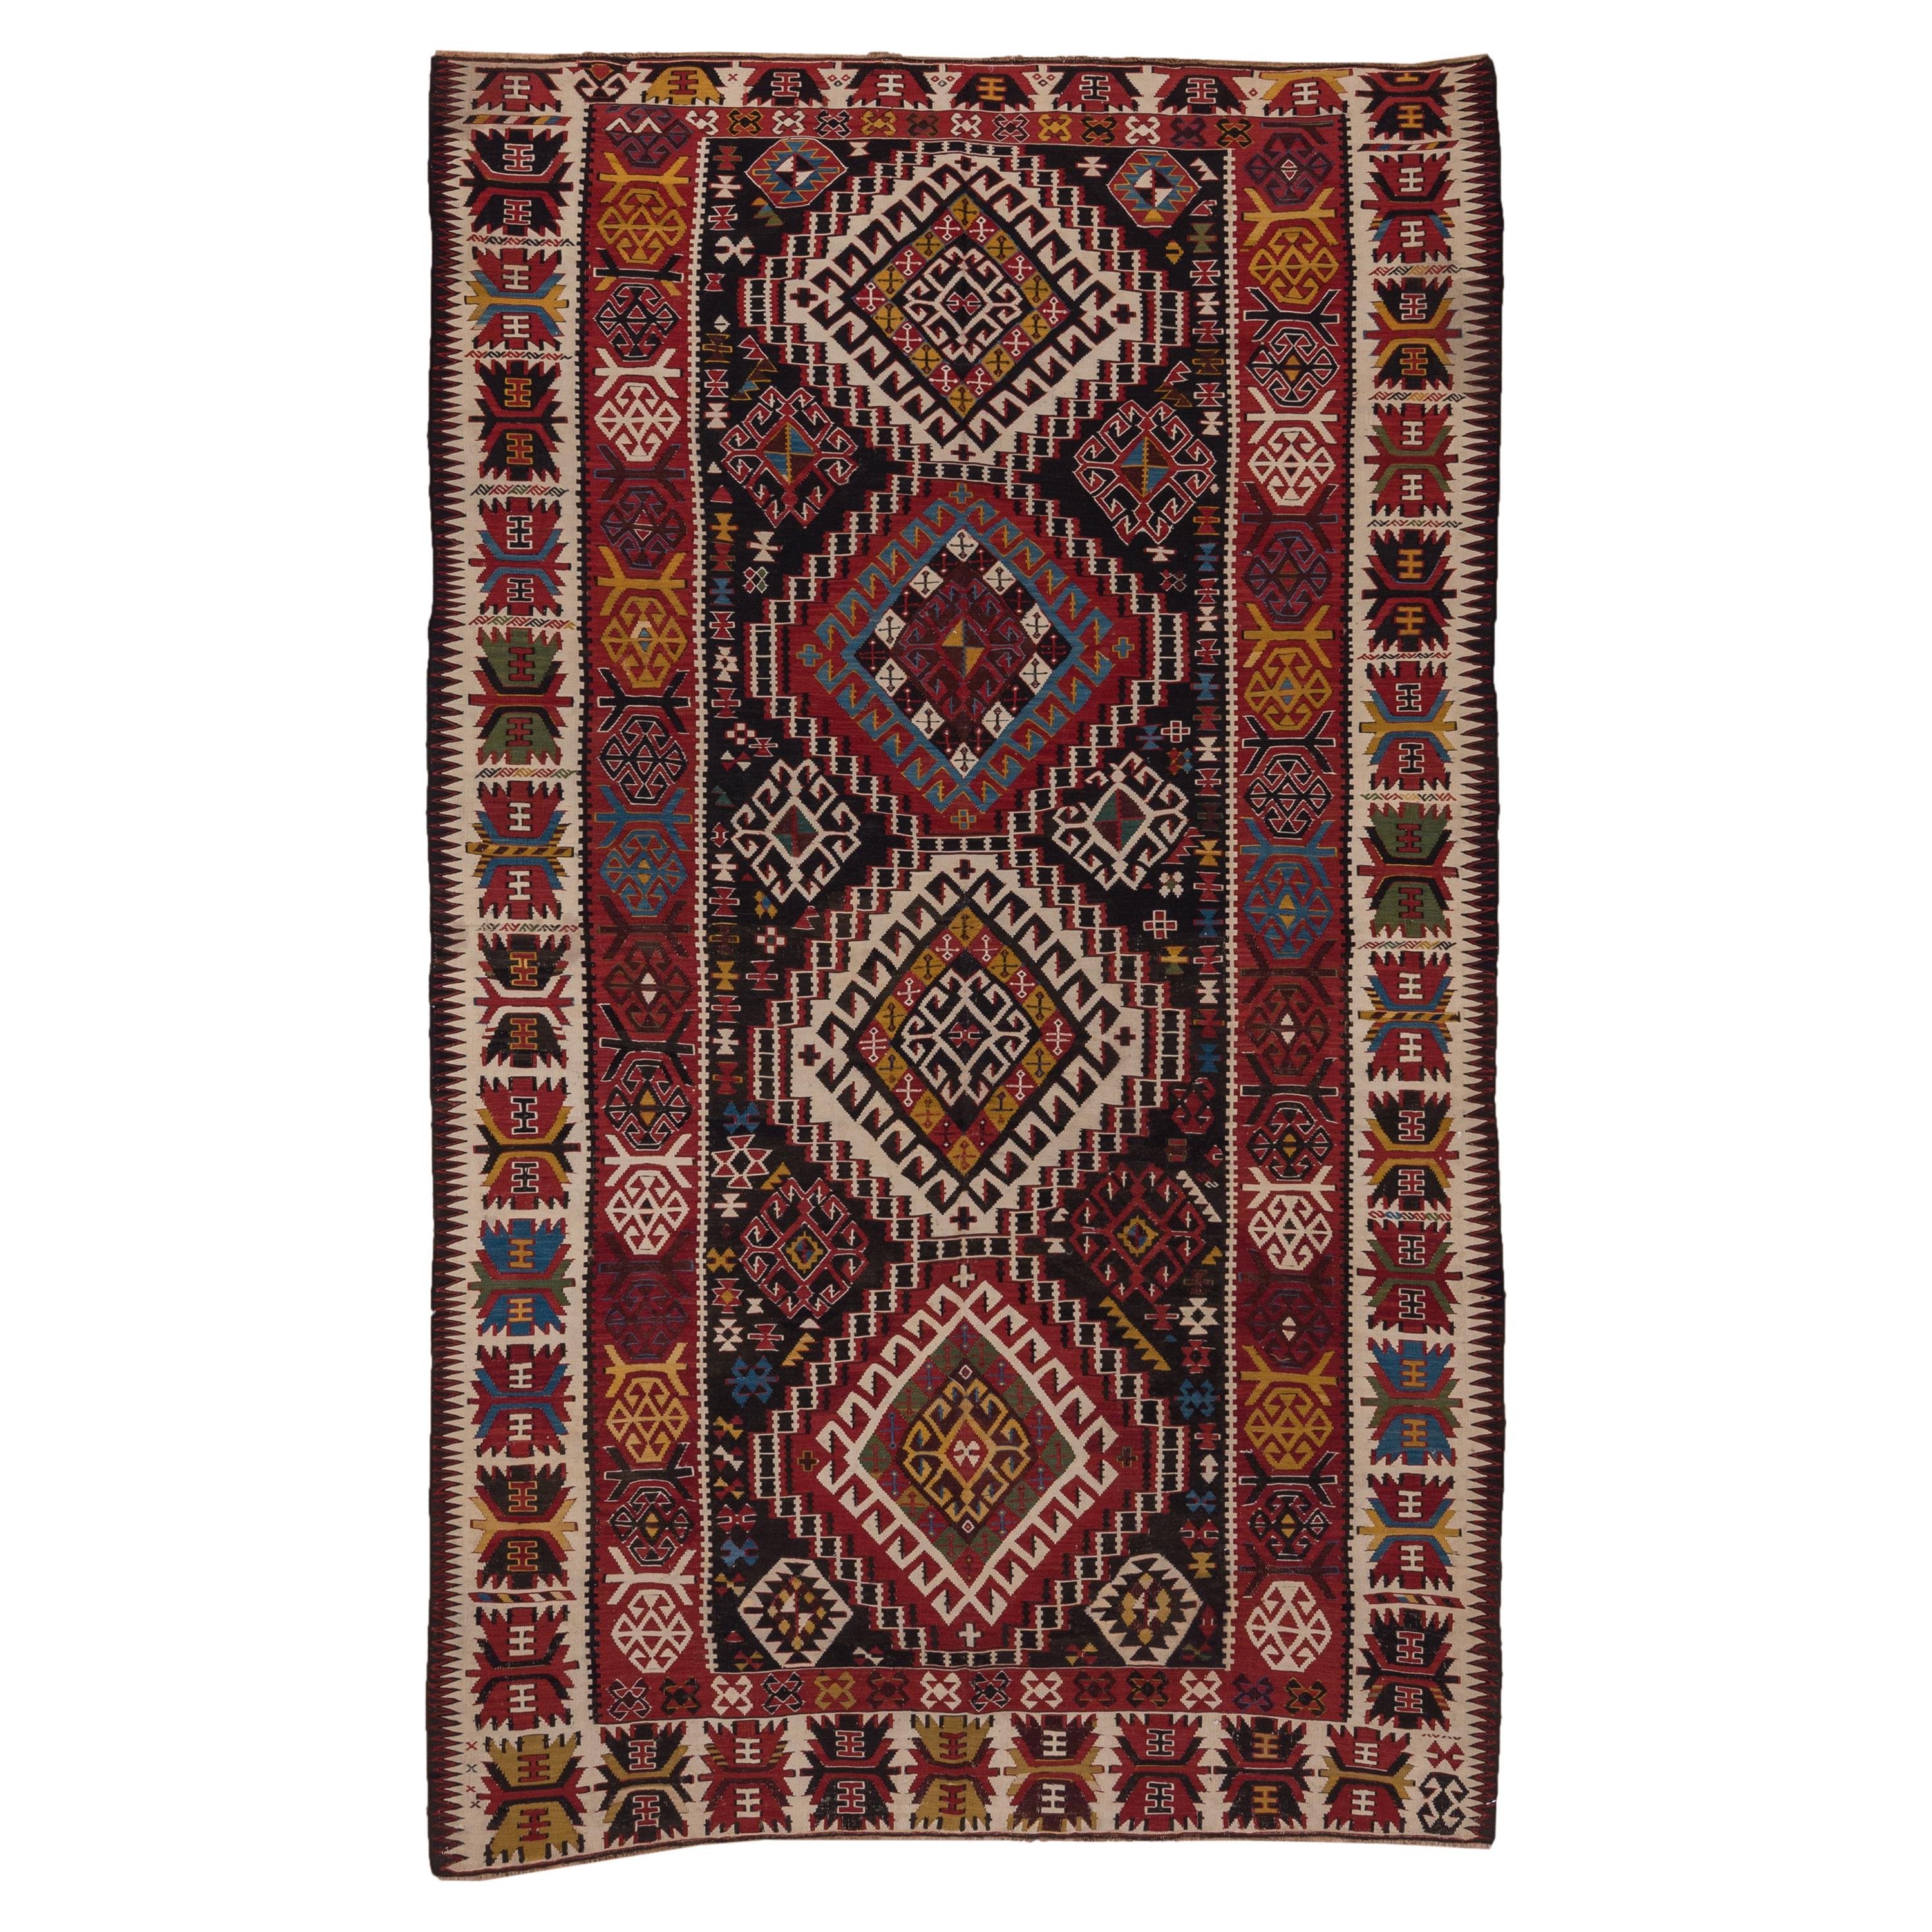 1920s Colorful Turkish Kilim Rug